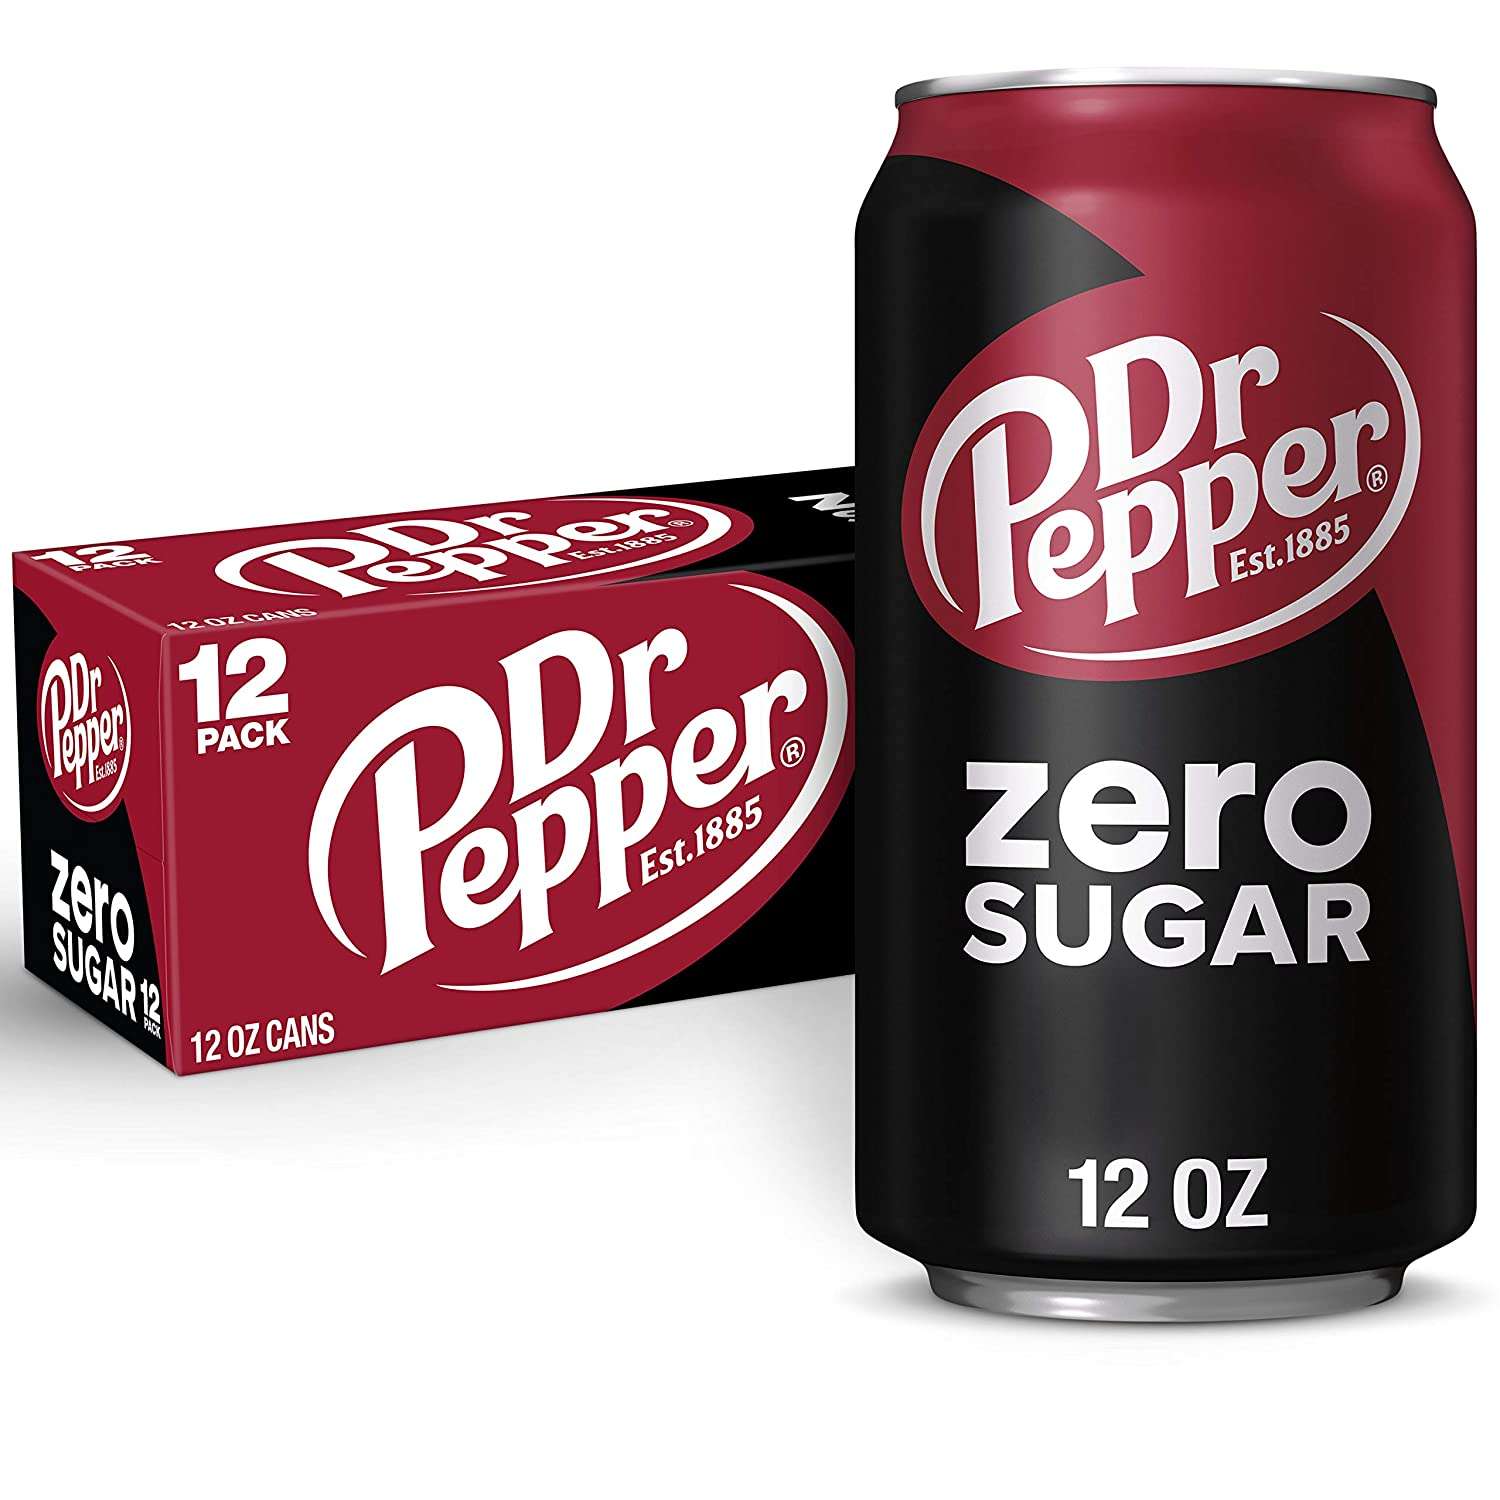 Dr Pepper Launches New Zero Sugar Line in 3 Delicious Flavors